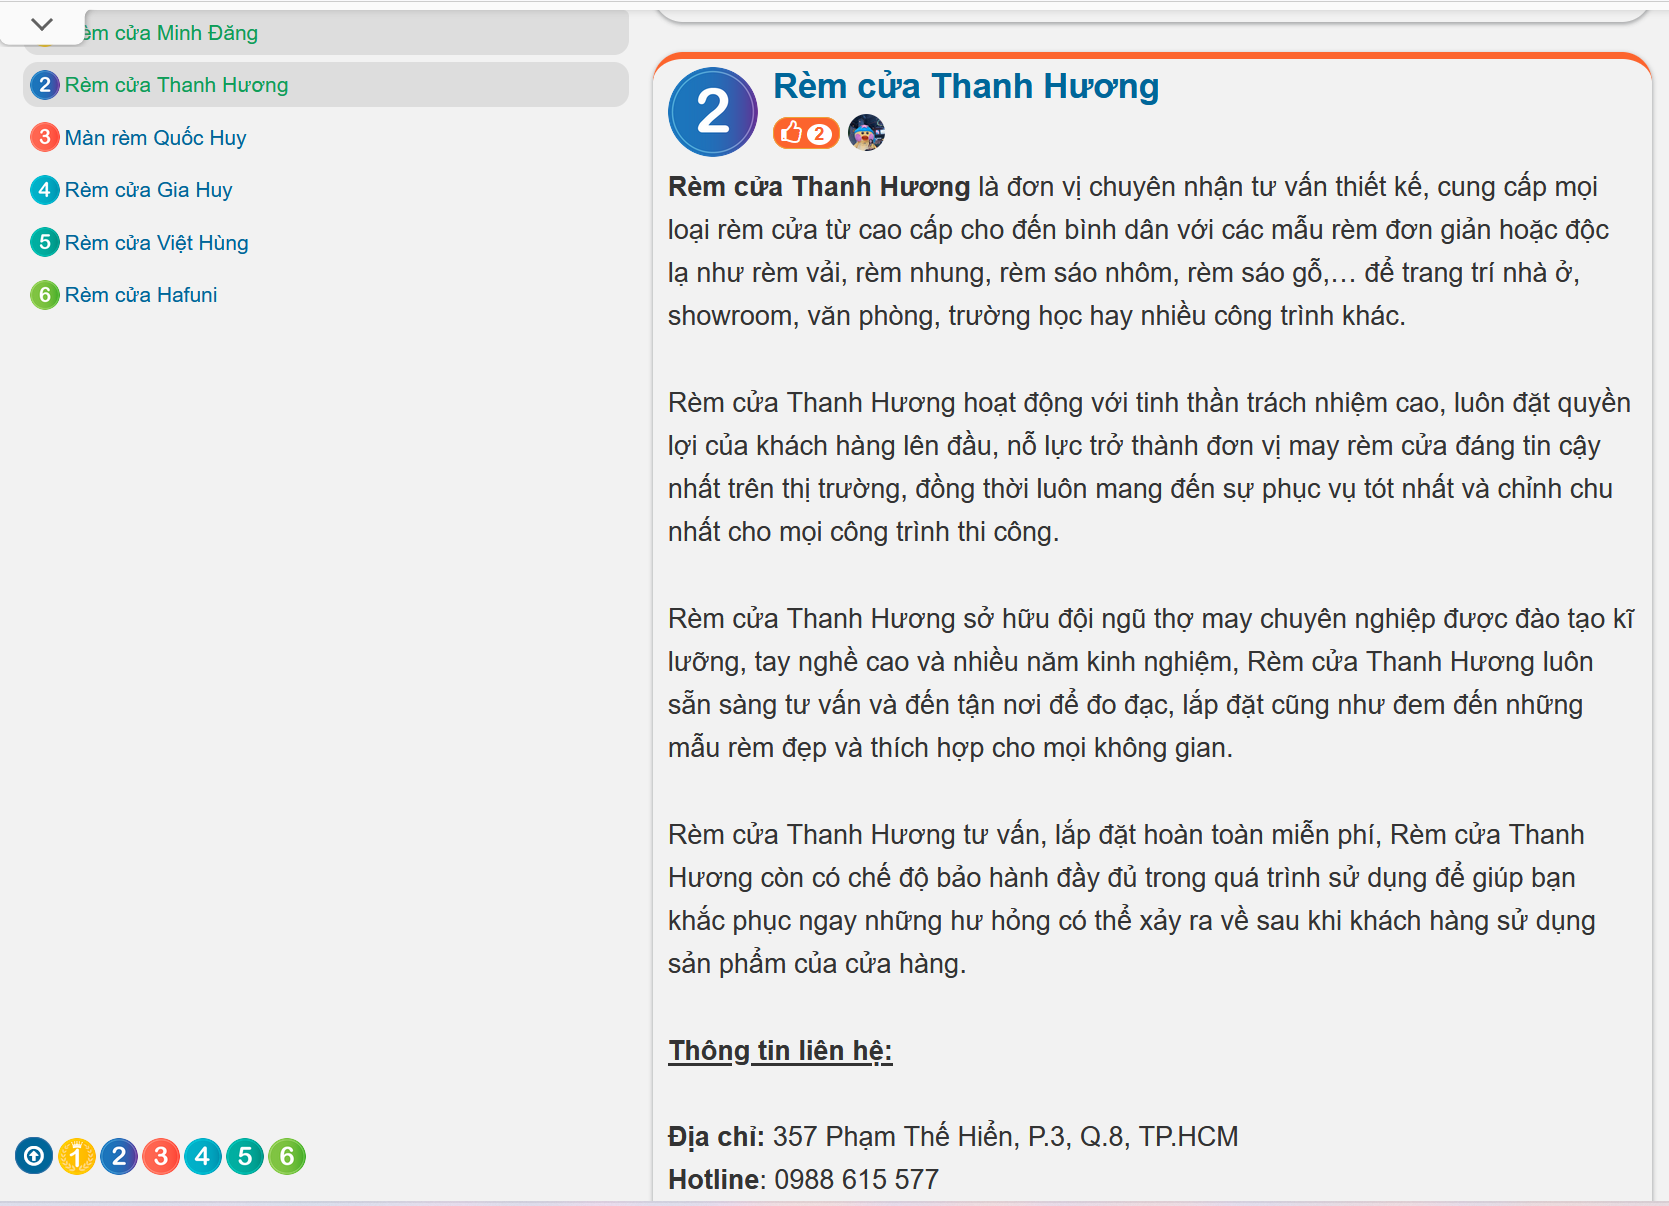 Man cua Thanh Huong top 2 dia chi may rem cua uy tin